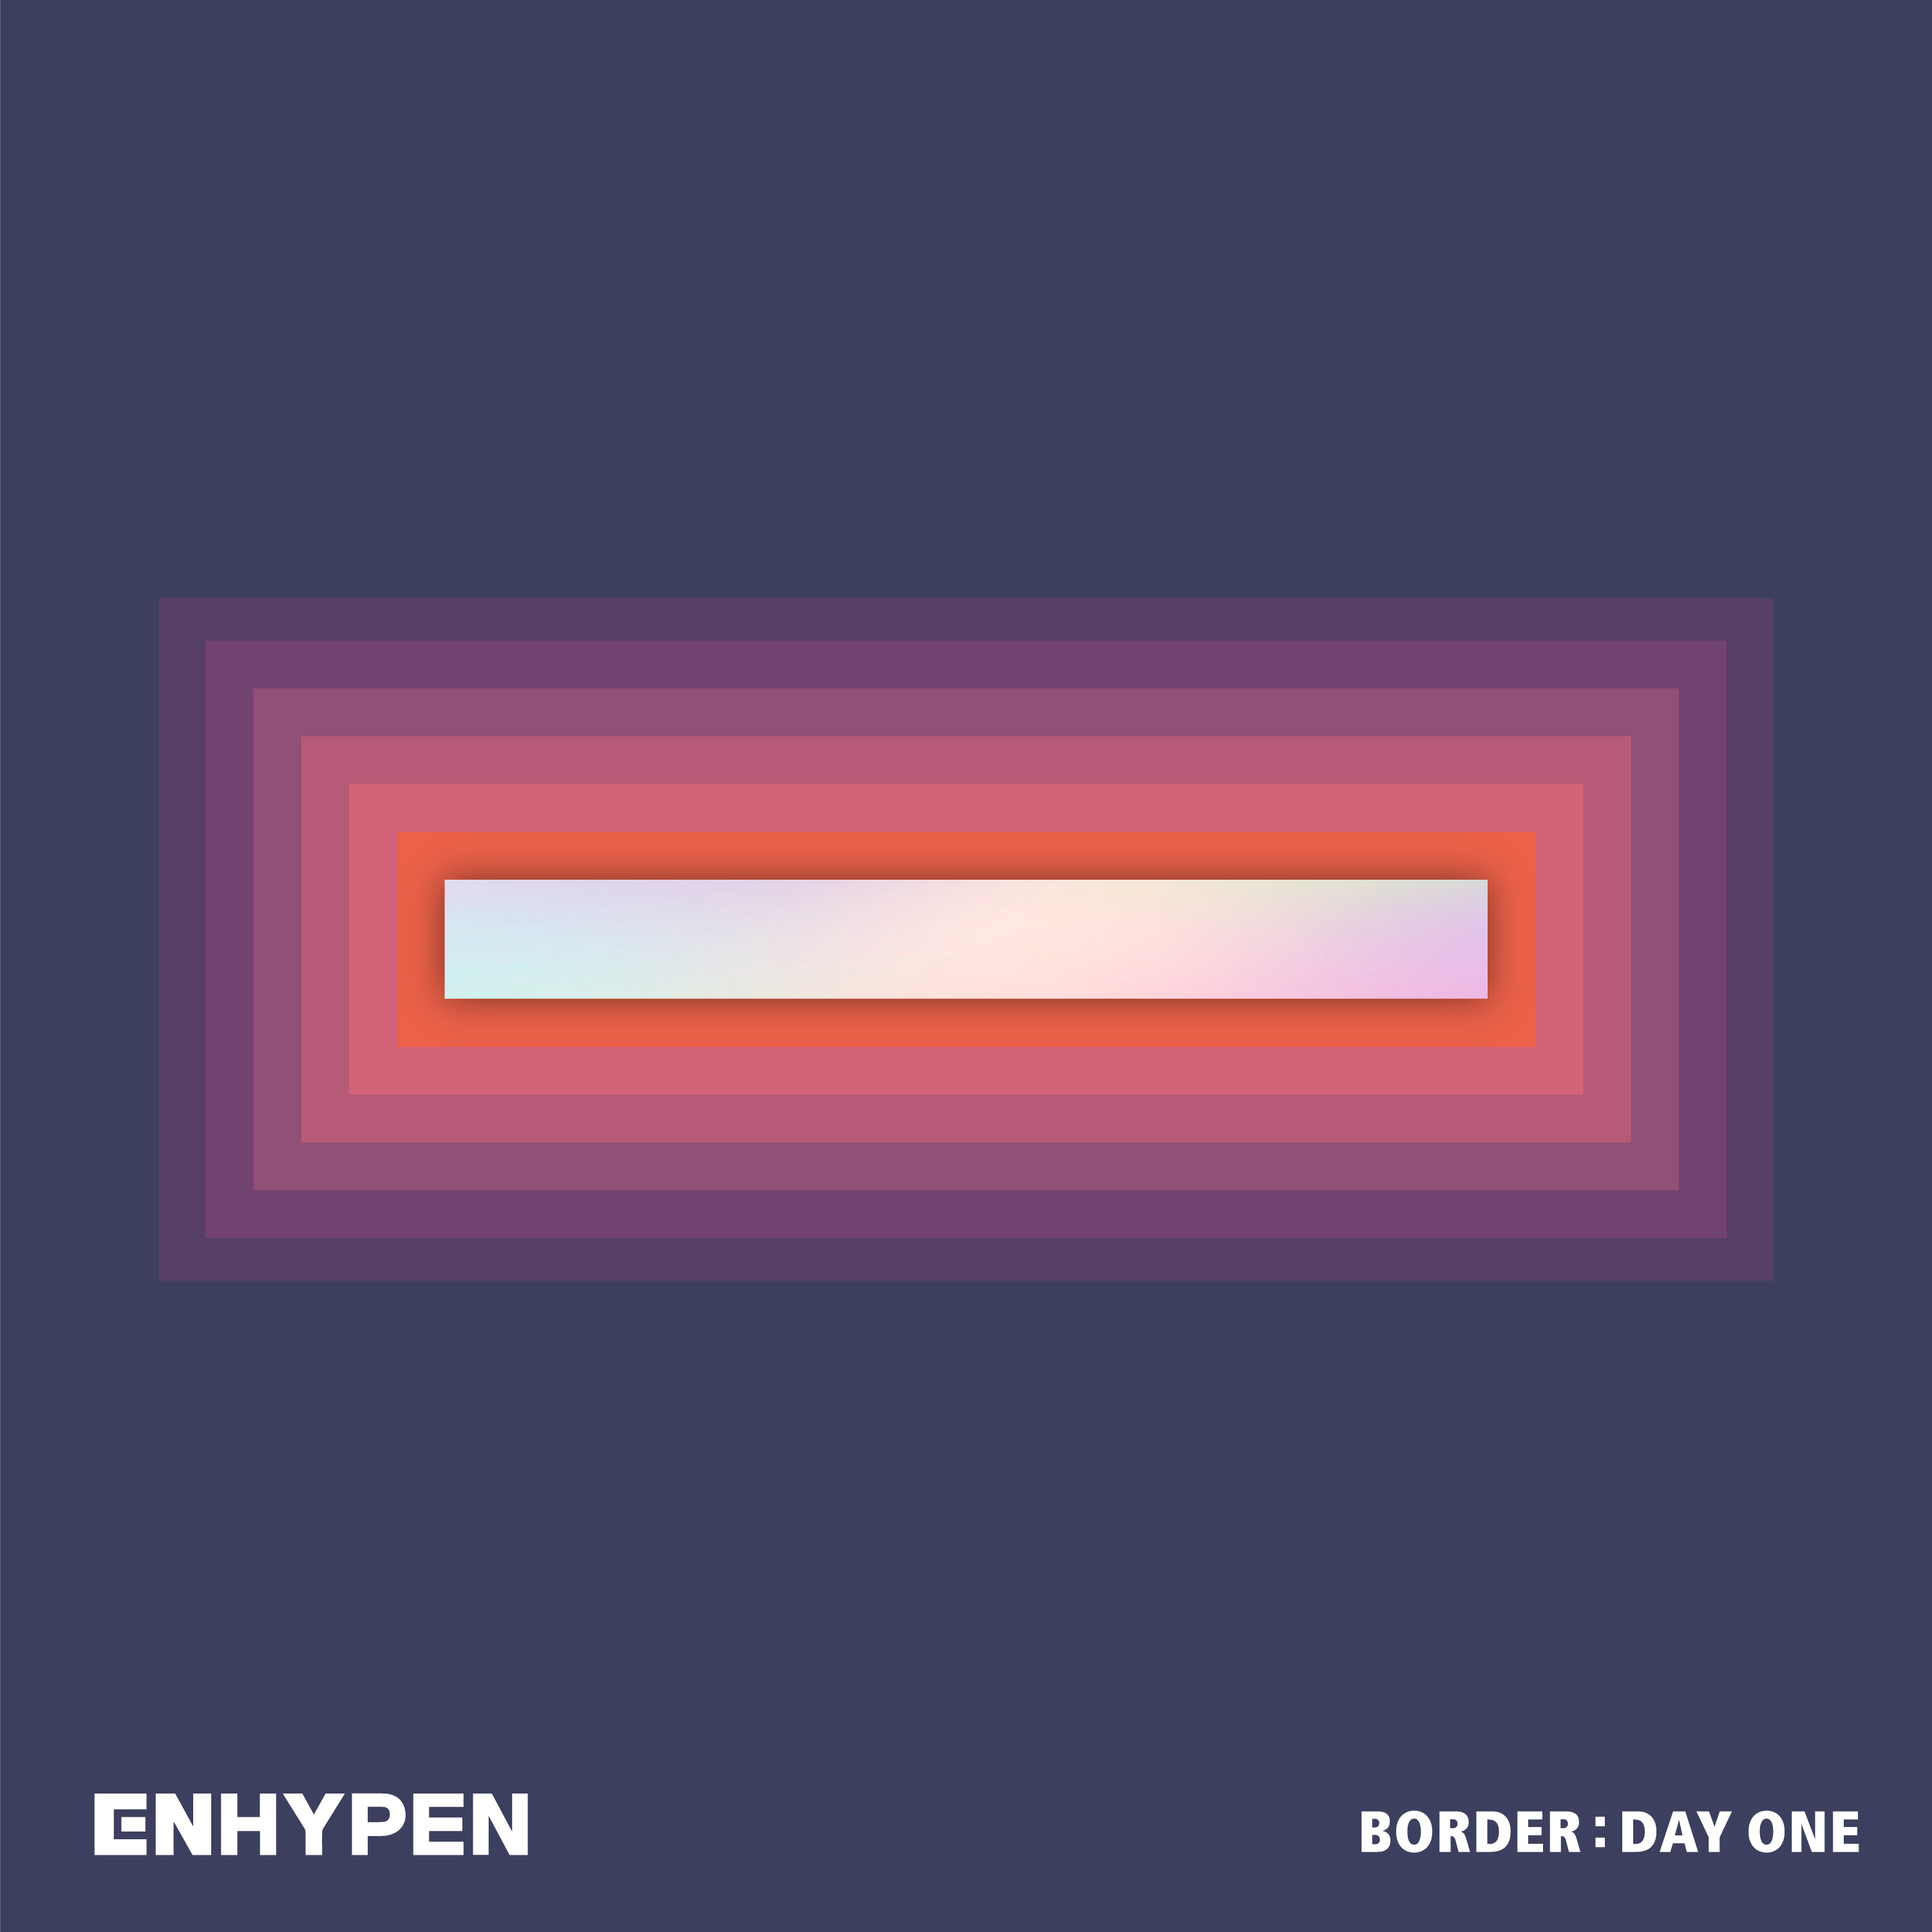 ENHYPEN BORDER DAY ONE Cover.jpg